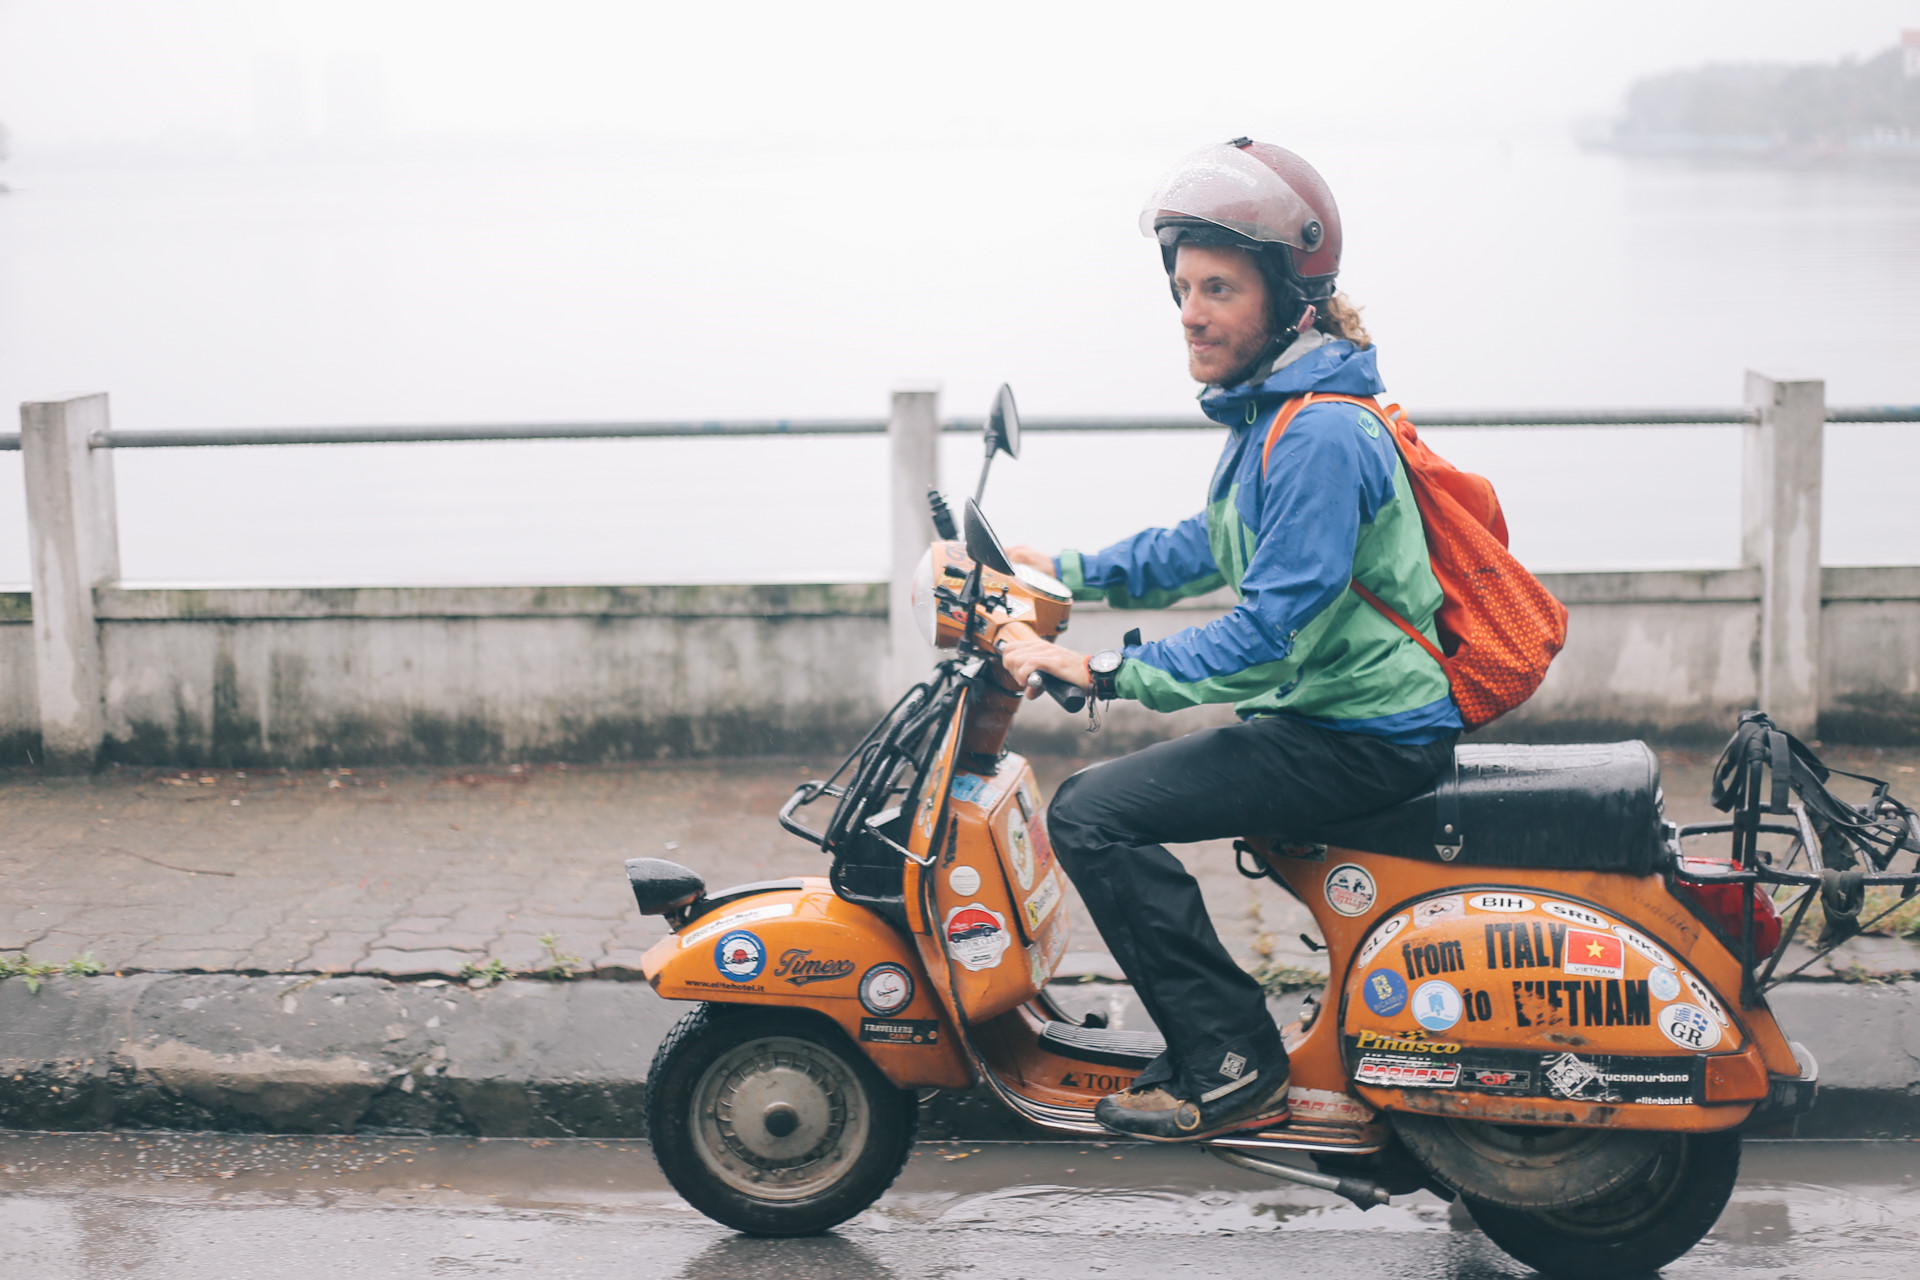 Chàng trai đi xe máy từ Italy đến Việt Nam trong 10 tháng